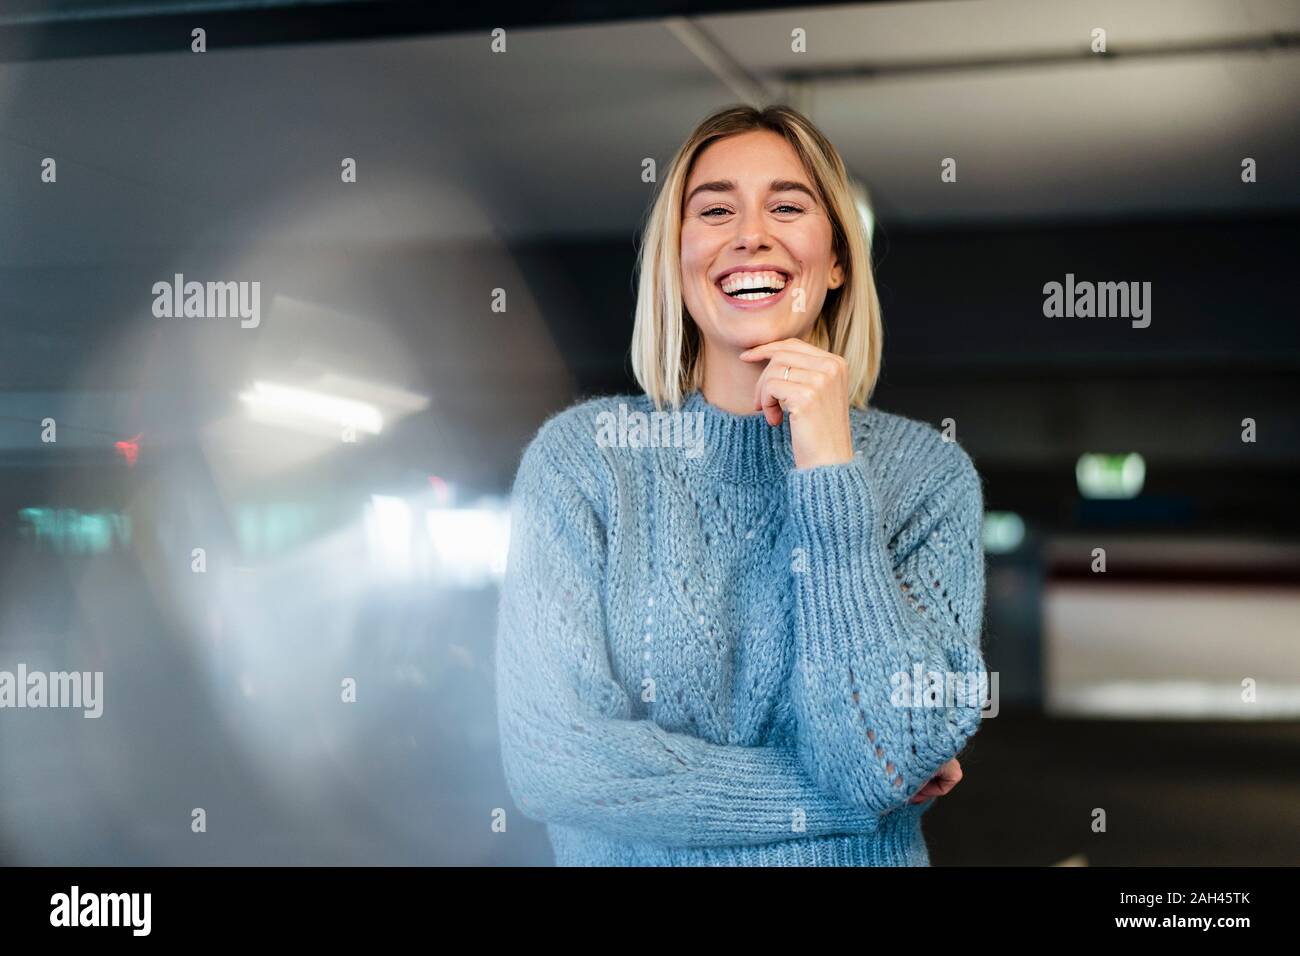 Portrait d'une jeune femme riait dans un parking couvert Banque D'Images